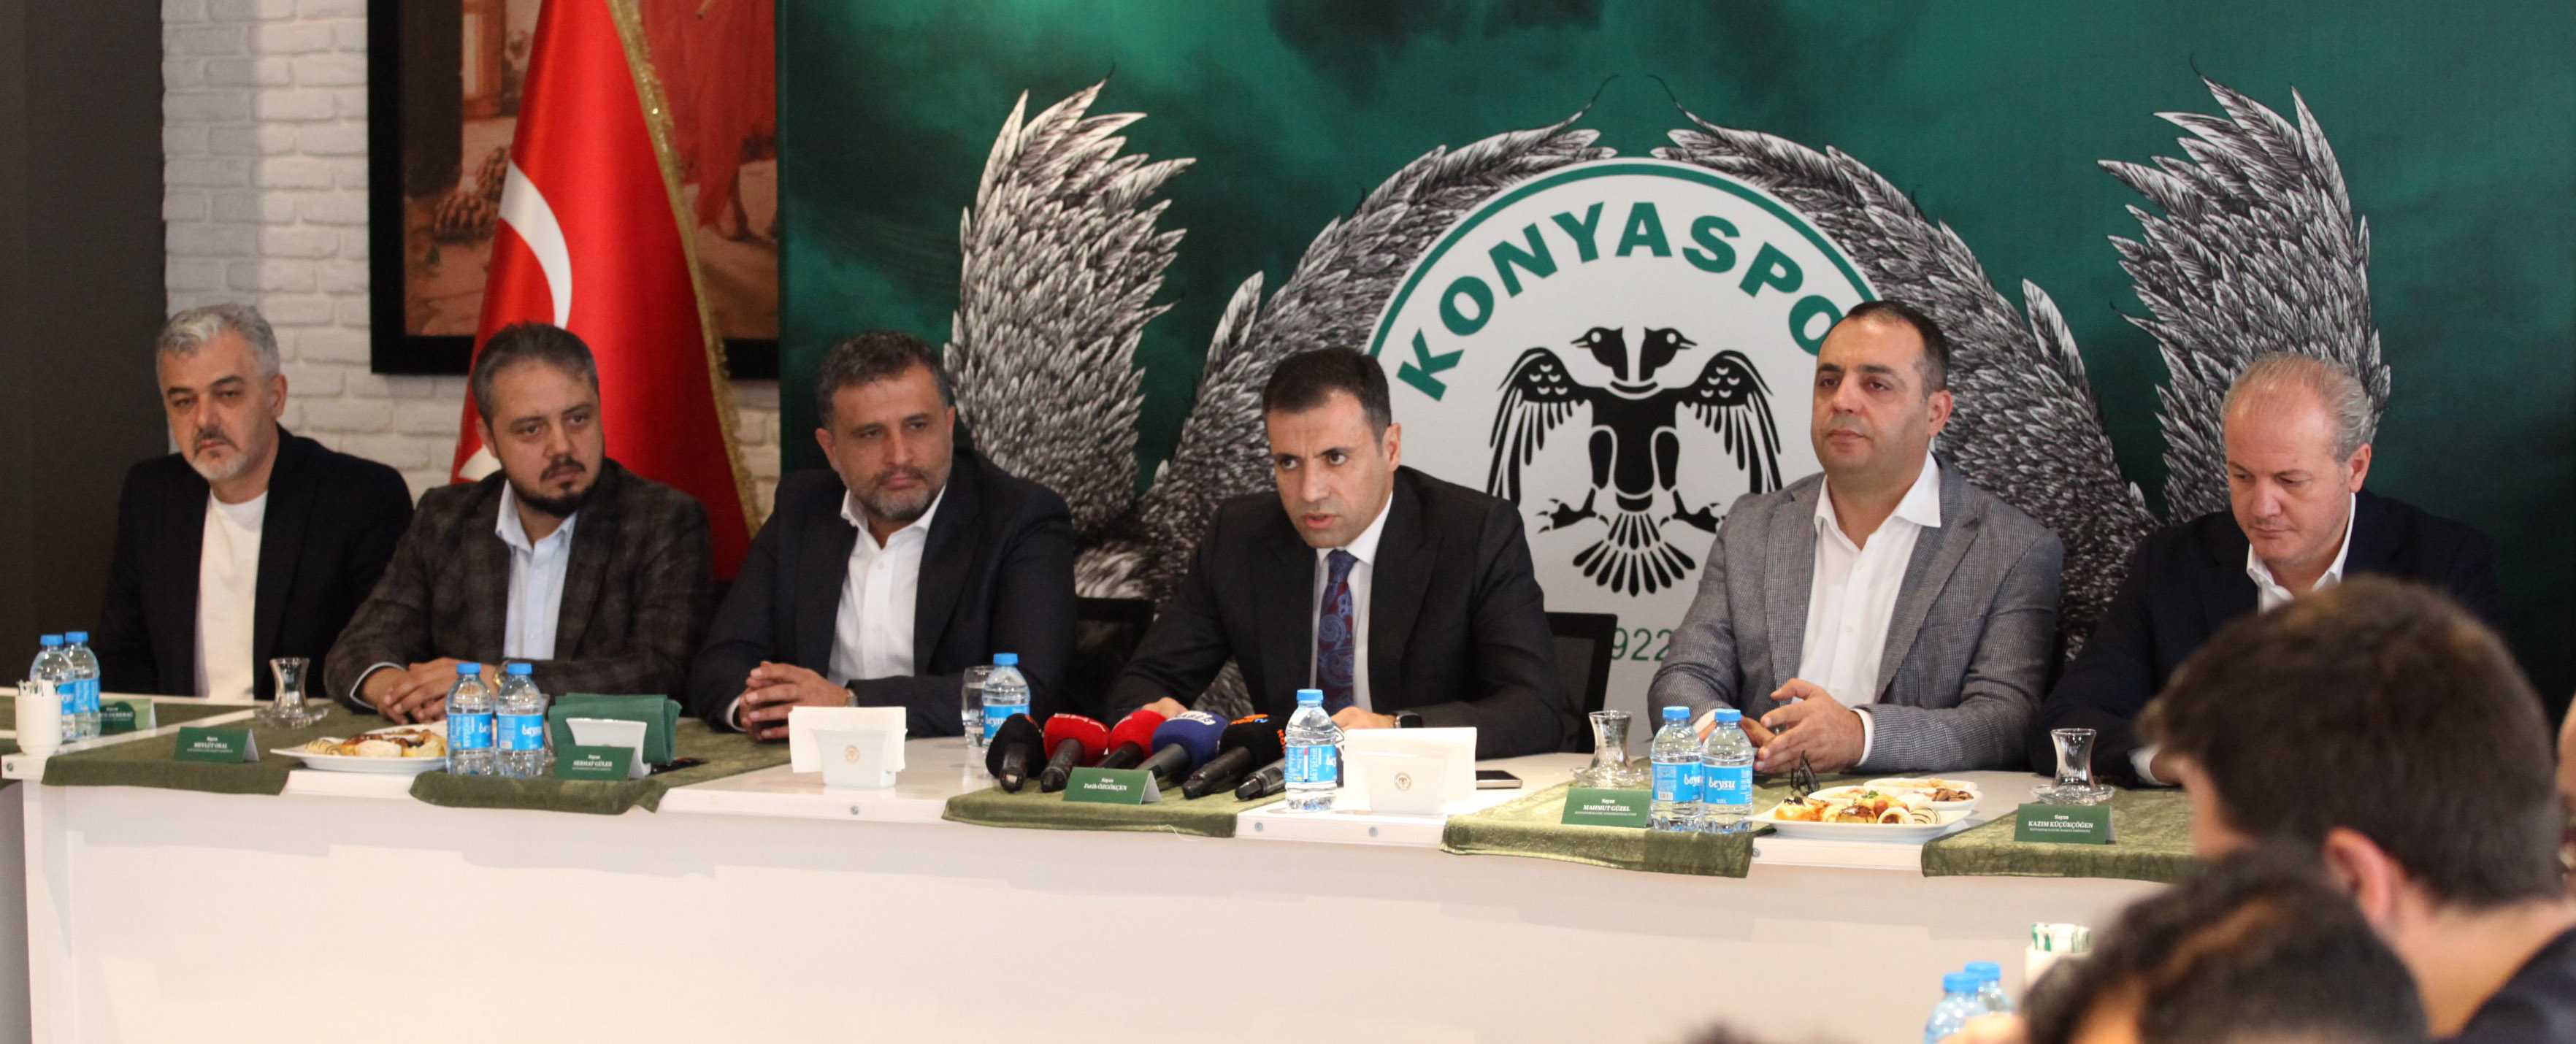 Konyaspor Yönetim Kurulu "Olağanüstü Kongre" kararı aldı